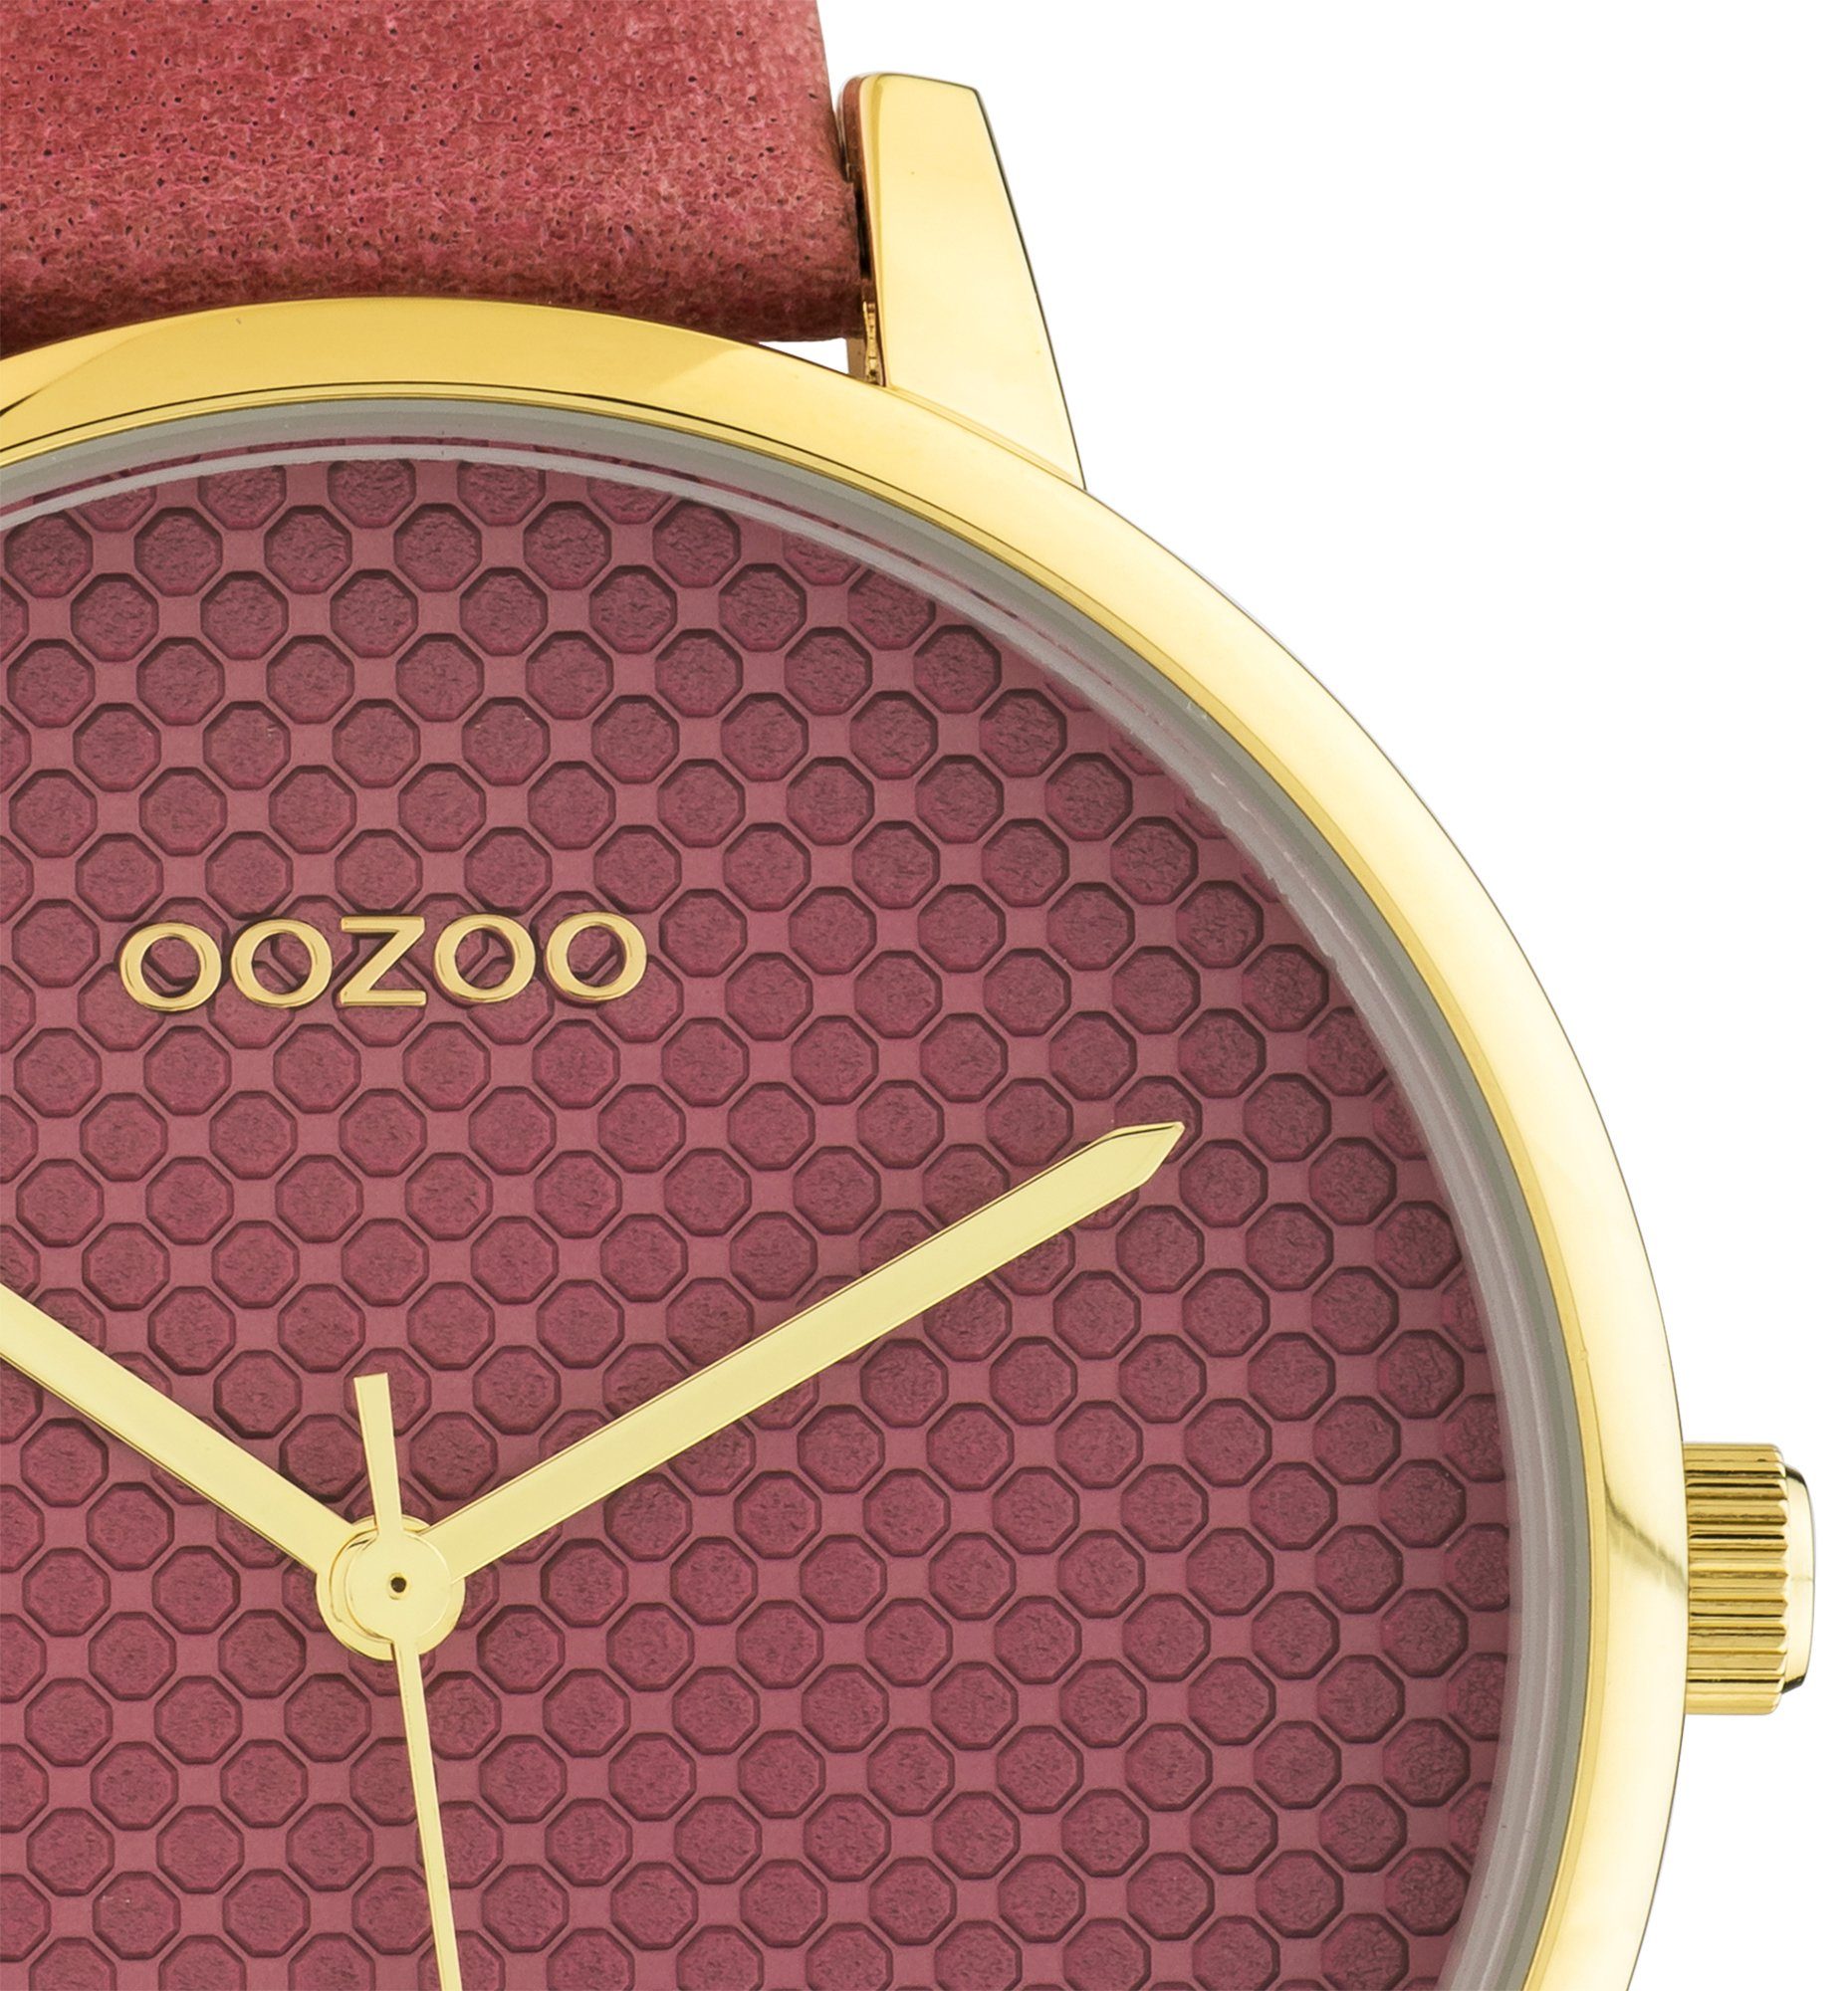 OOZOO Quarzuhr C10591, Metallgehäuse, goldfarben IP-beschichtet, Ø ca. 42 mm